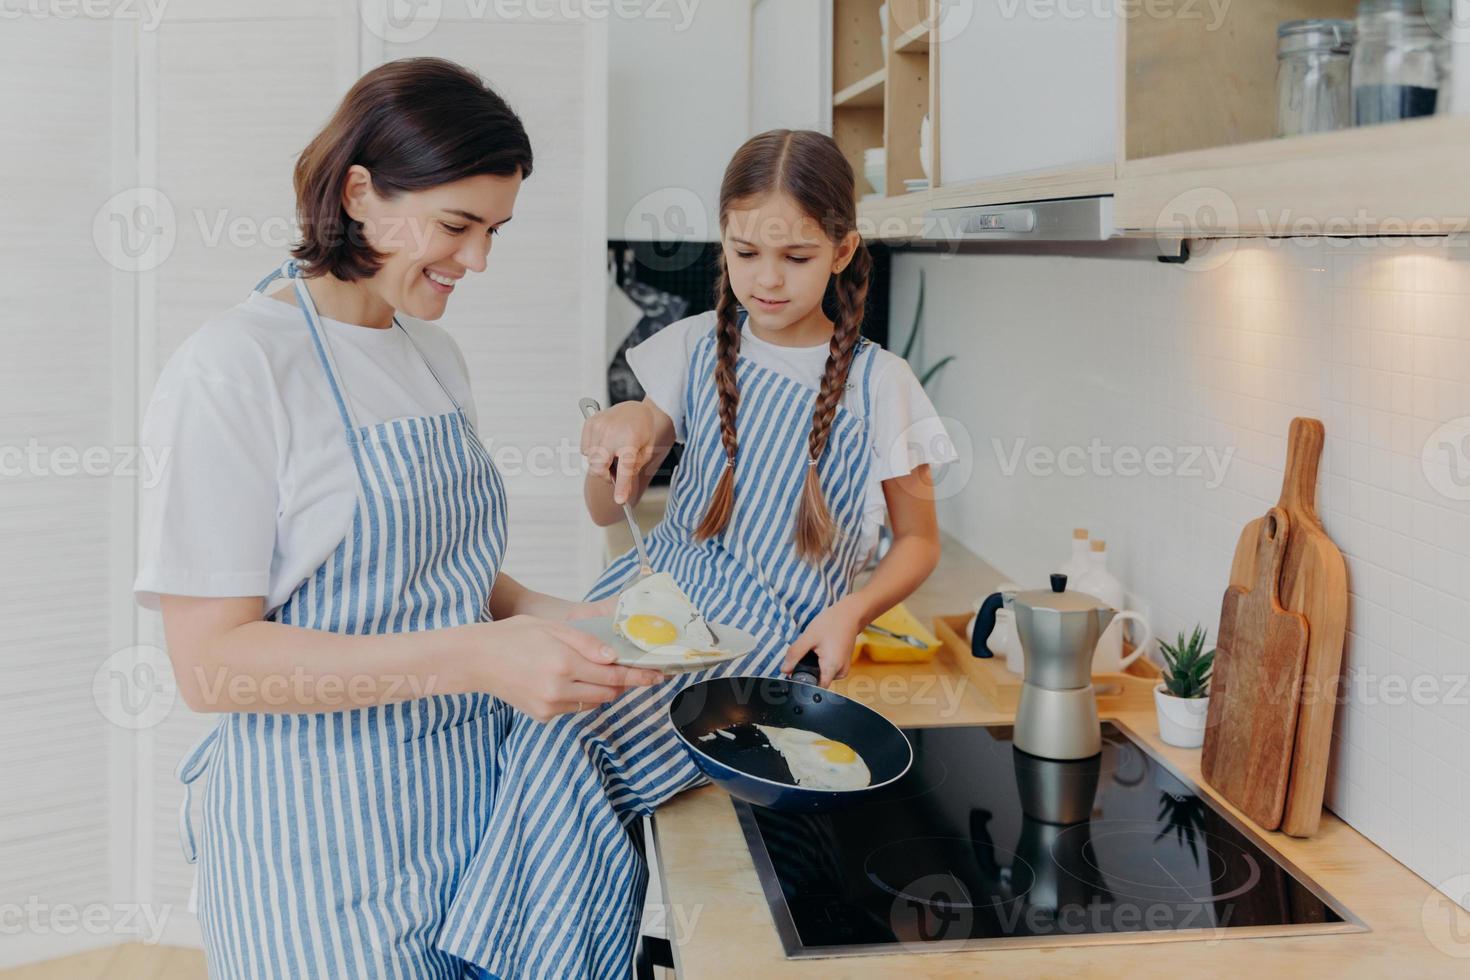 foto van vrolijke drukke moeder en haar dochter poseren bij het fornuis, serveren ontbijt voor het gezin, bakken eieren in de koekenpan, dragen schorten, poseren in de huiselijke keuken. moeder leert kind hoe je een maaltijd gemakkelijk kunt bereiden